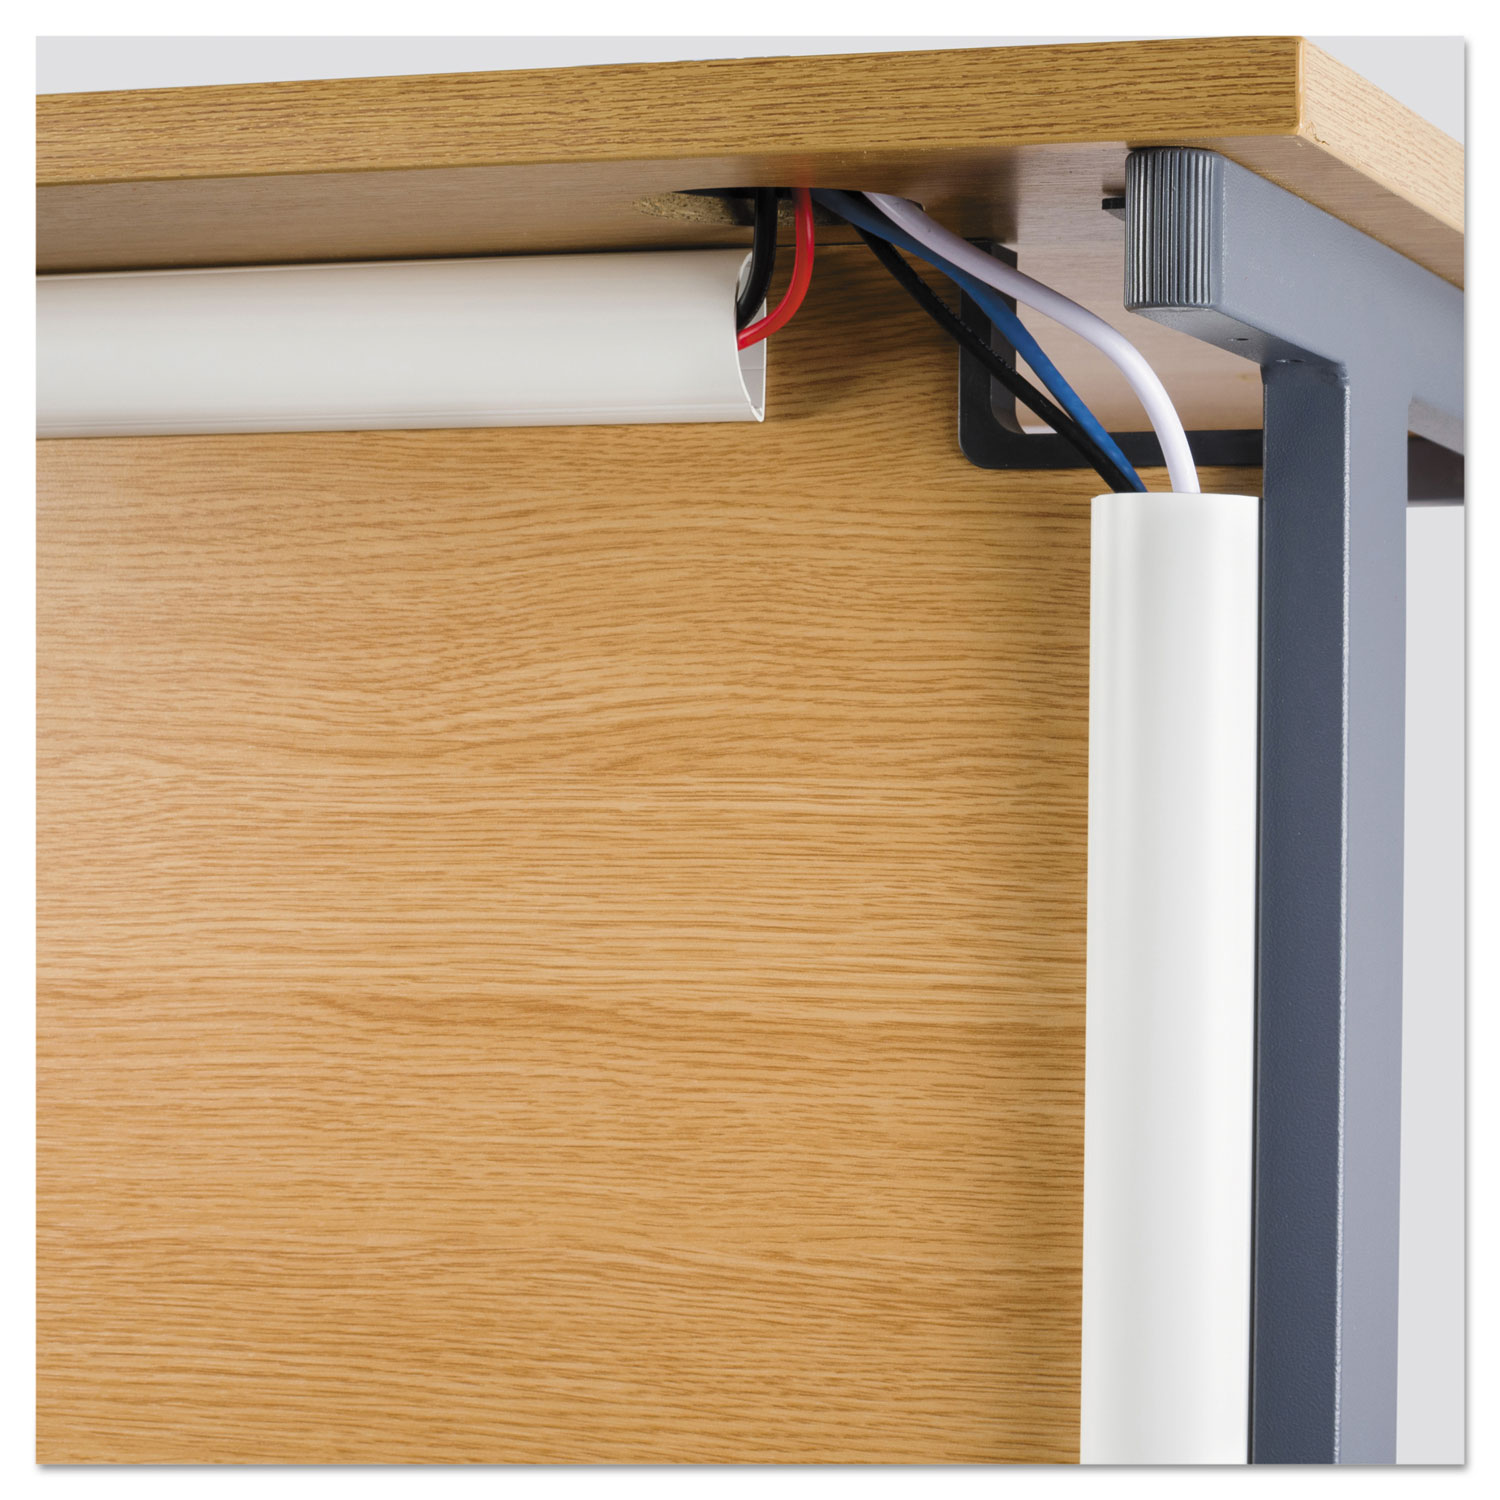 Decorative Desk Cord Cover, 60 x 2 x 1 Cover, White - Reliable